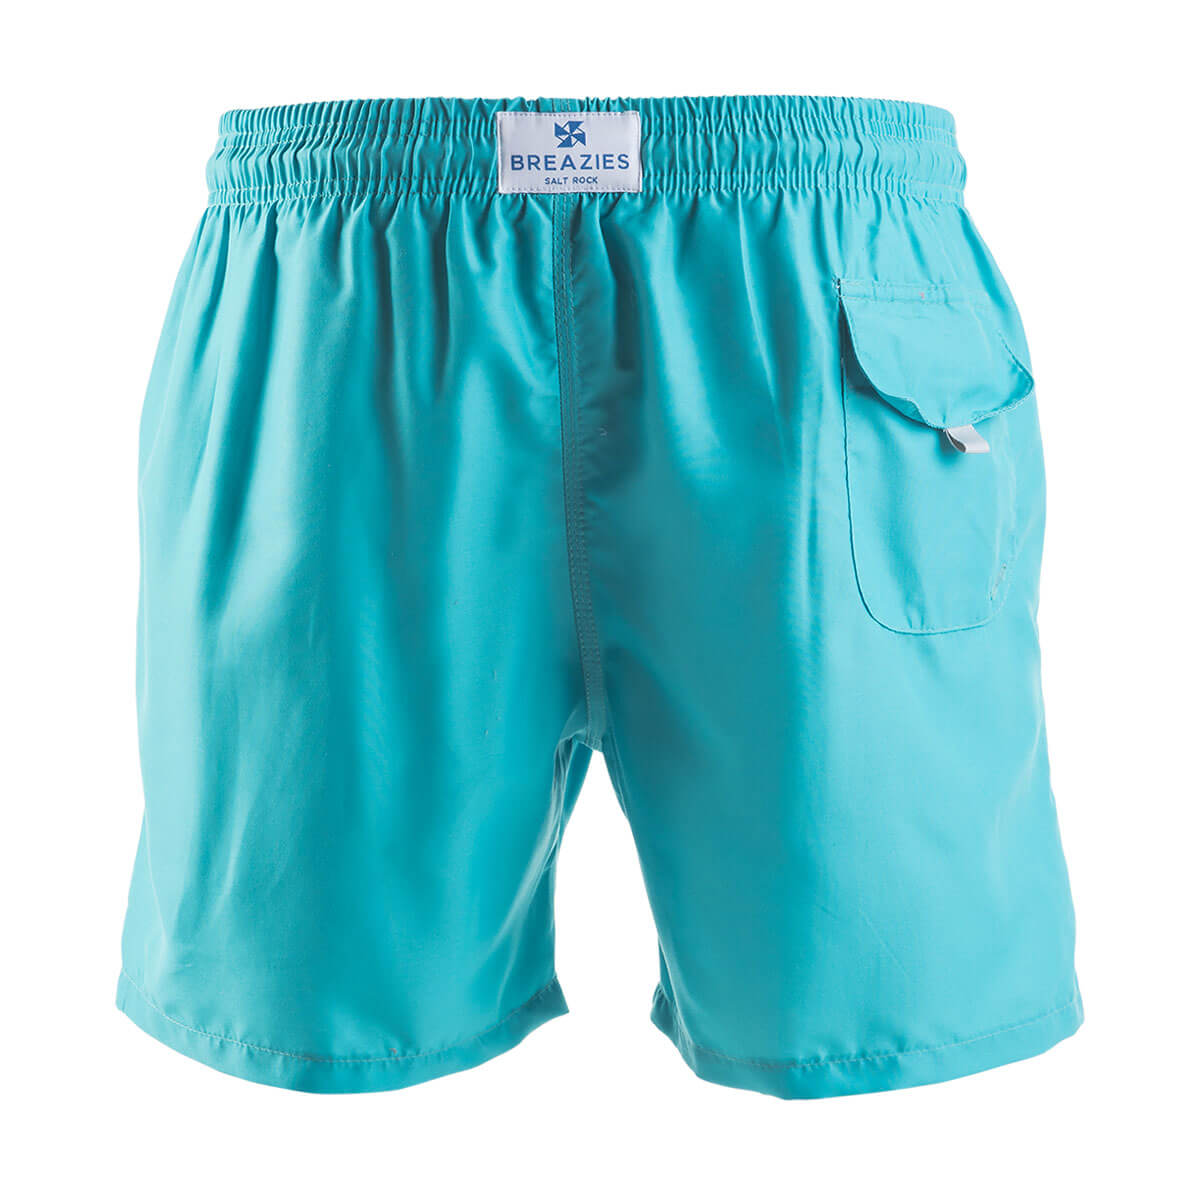 Swim Shorts - Solid | Aqua